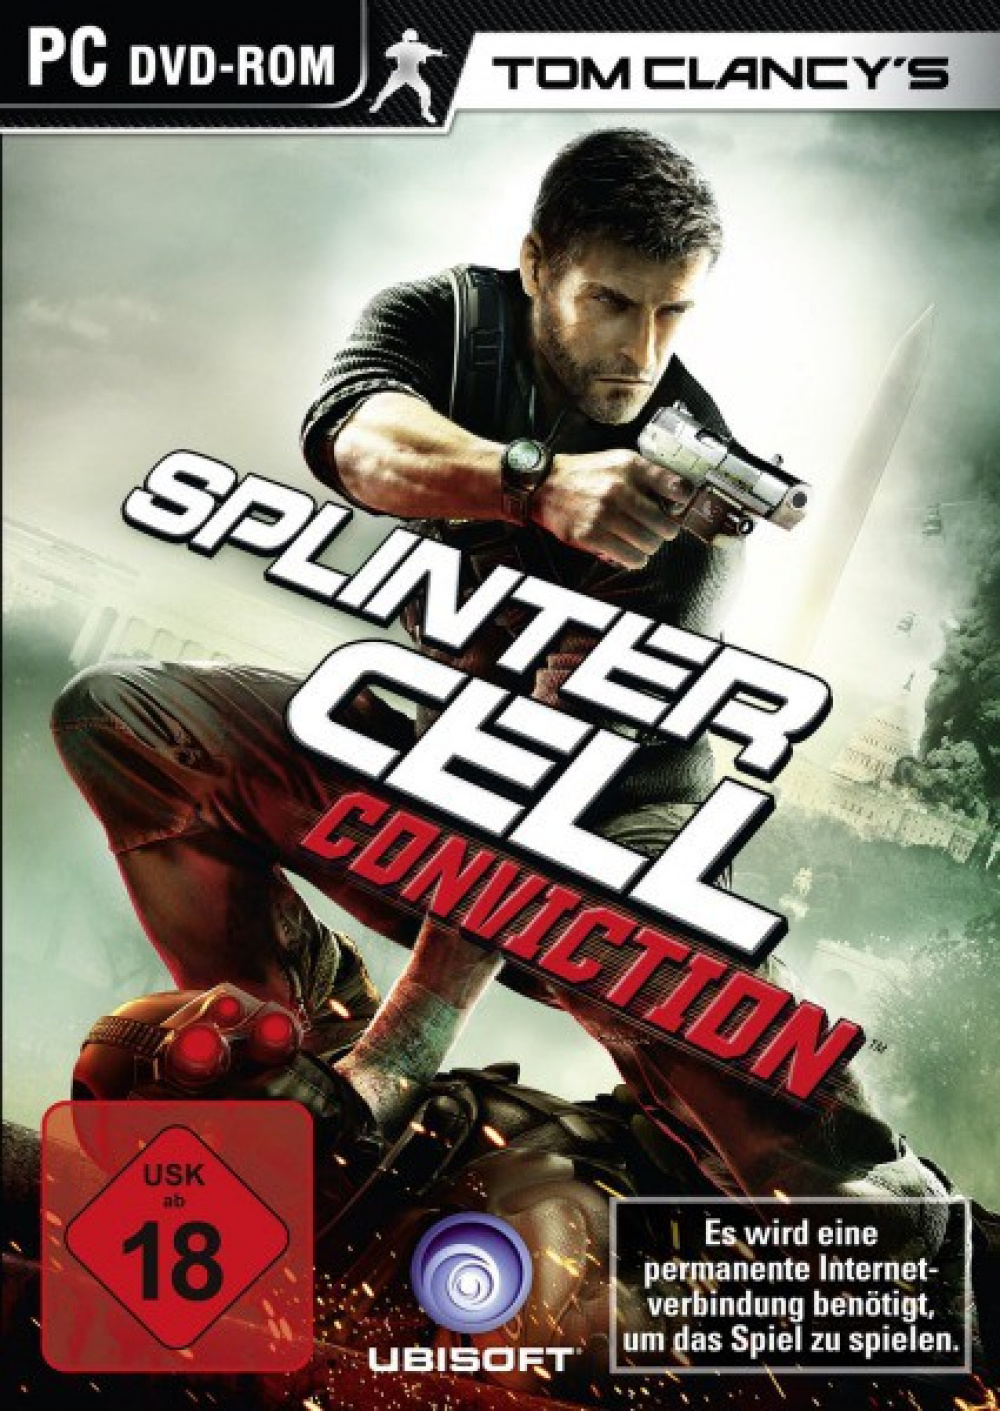  Splinter Cell Ps4